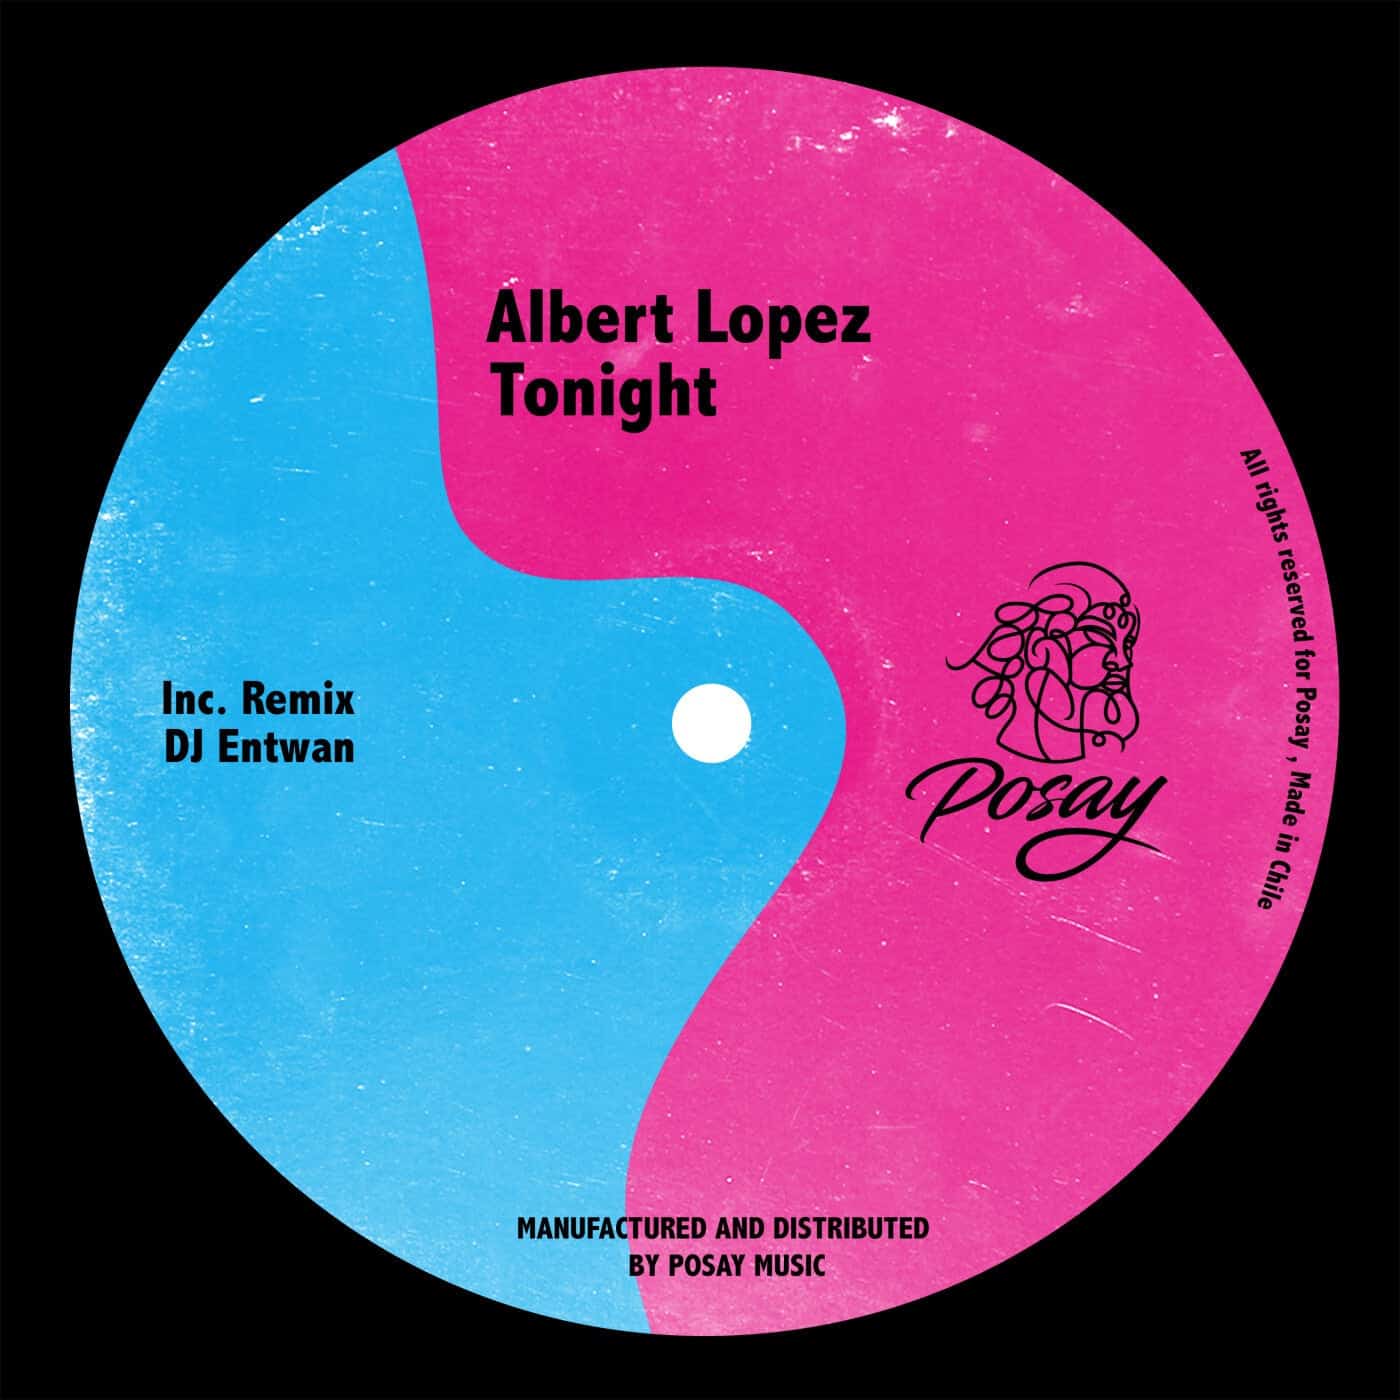 Download Albert Lopez, Diego Sosa - Tonight on Electrobuzz